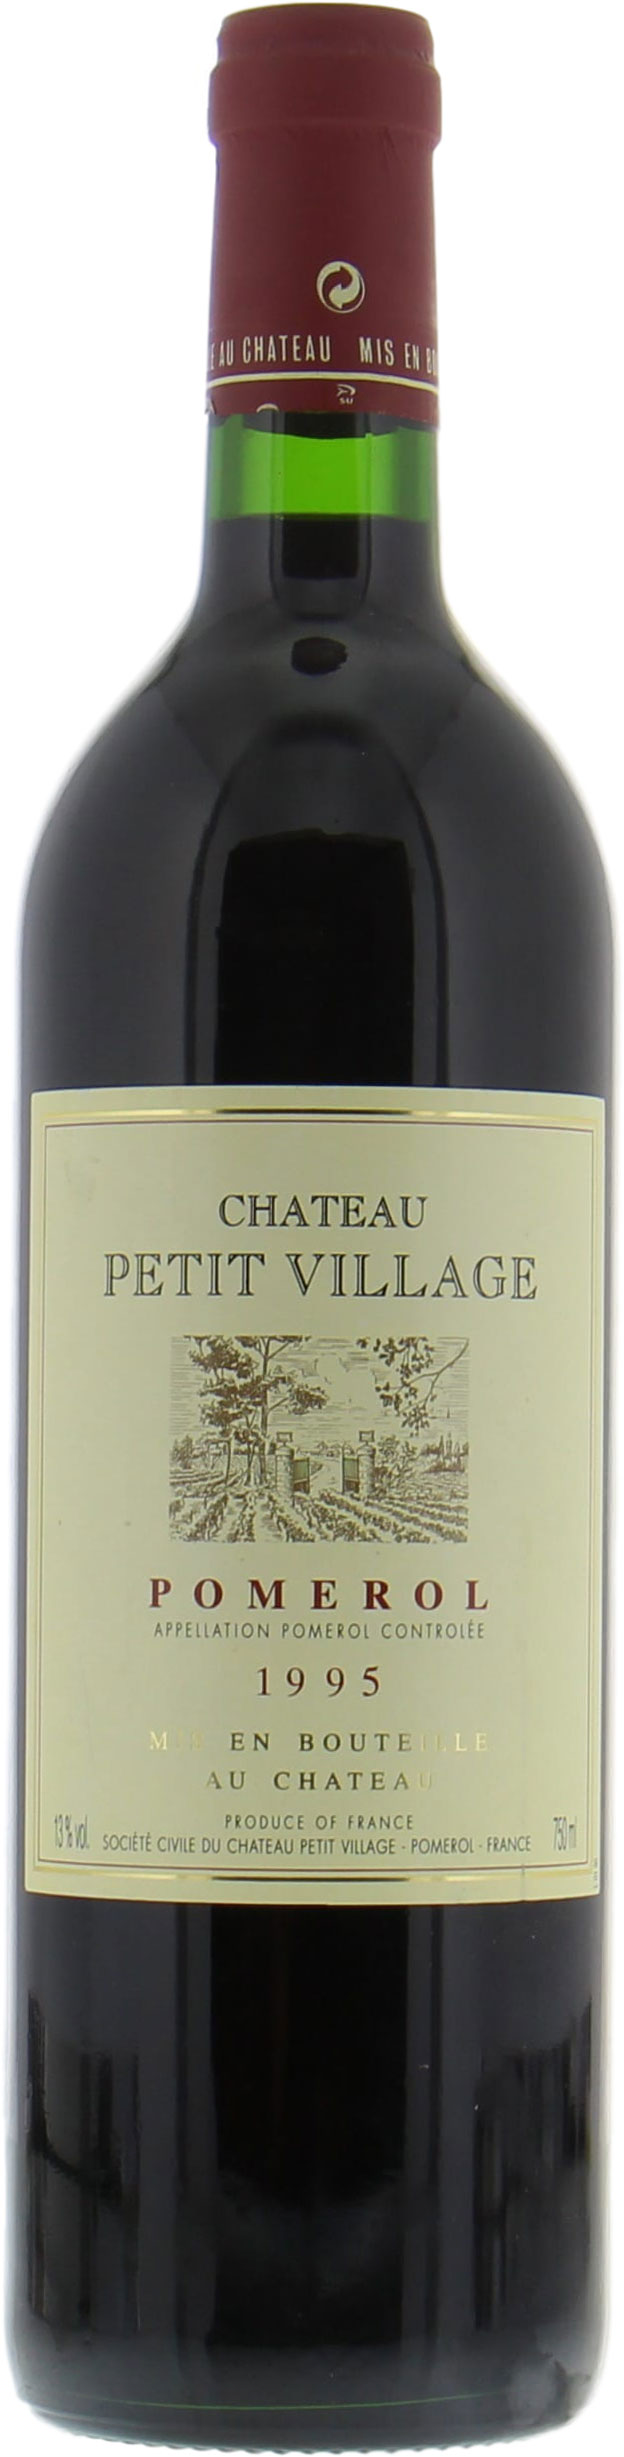 Chateau Petit Village - Chateau Petit Village 1995